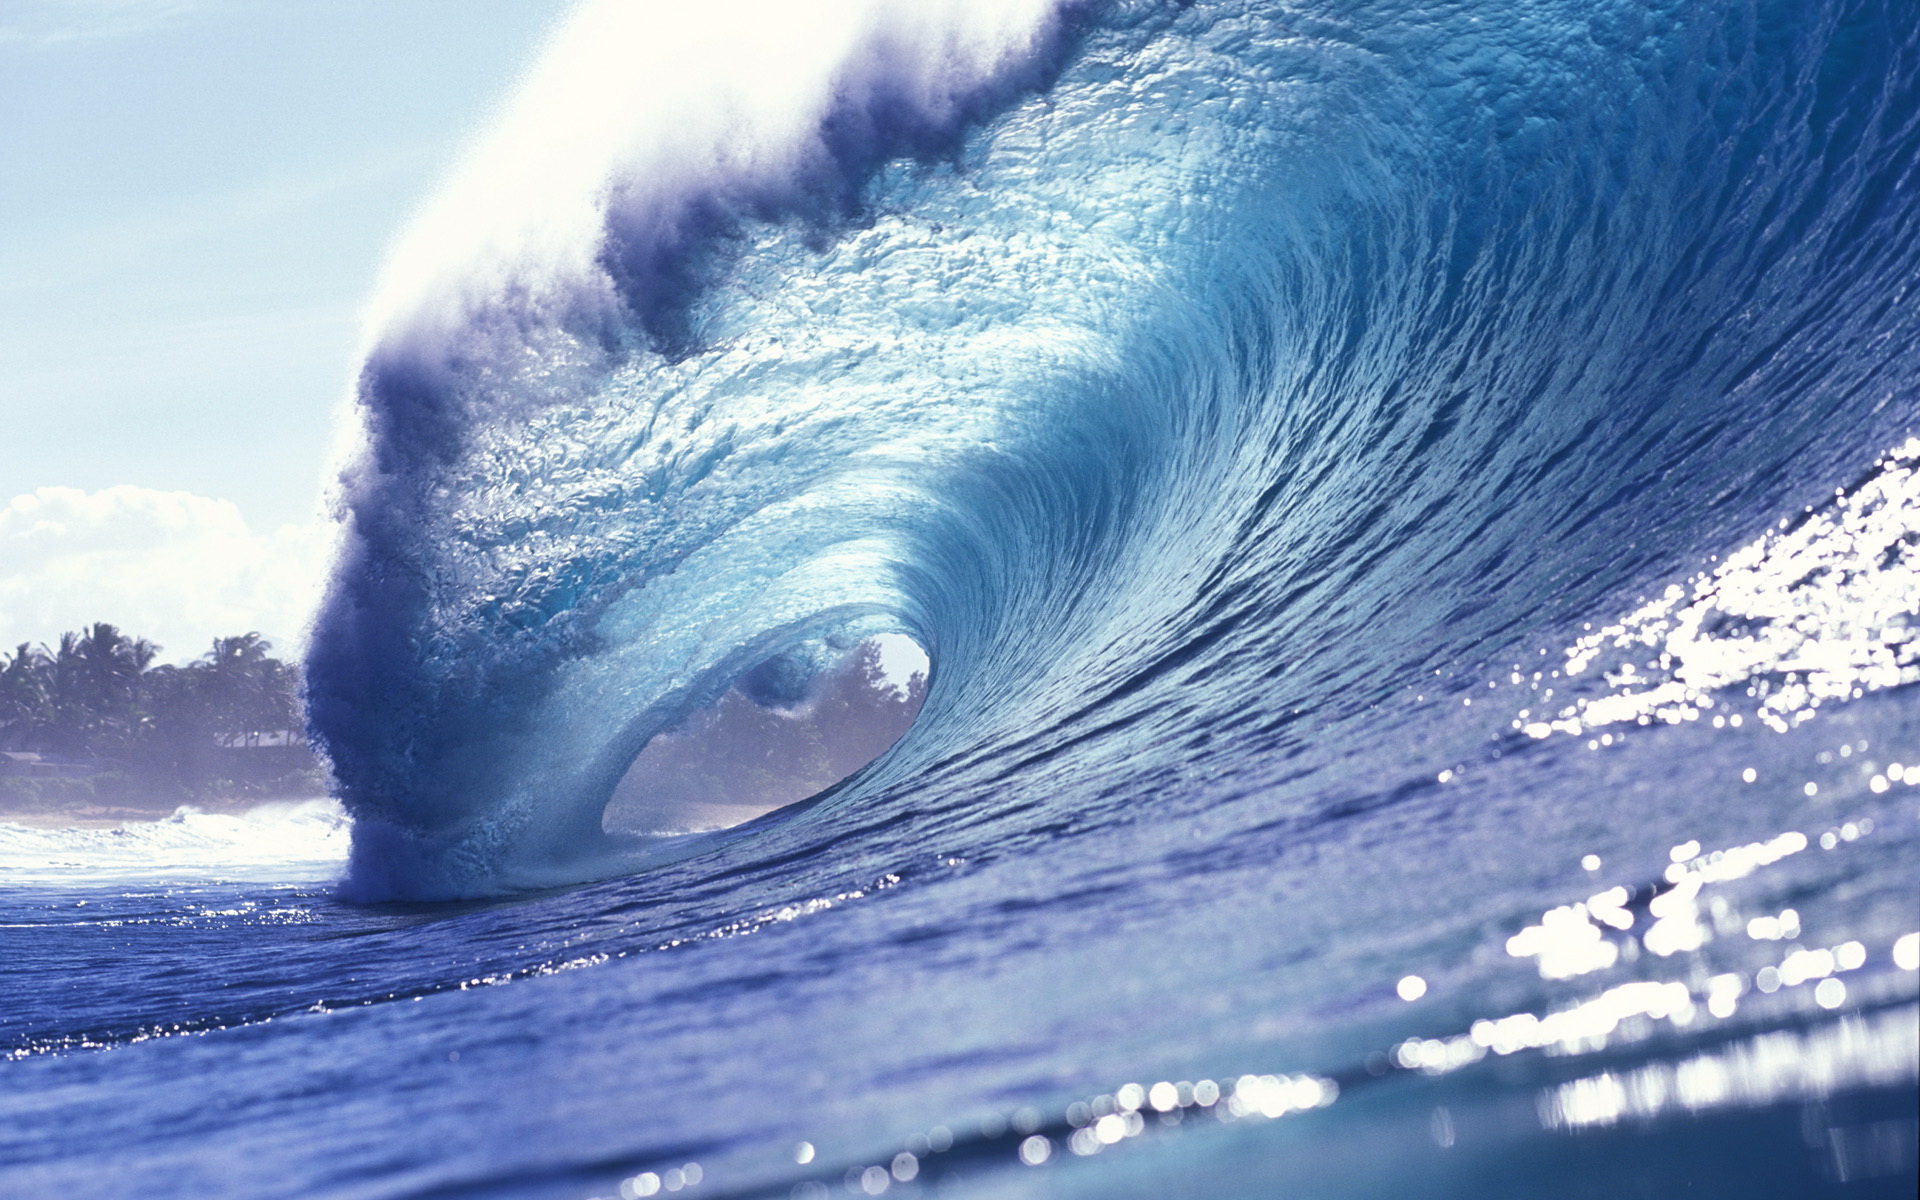 Con sóng sẽ mang đến cho bạn cảm giác mạnh mẽ và cuốn hút với các hình ảnh tuyệt đẹp. Hãy chiêm ngưỡng và cảm nhận sức mạnh của con sóng khi chạm mặt trời hay khi nó đánh vào đá. Hãy tận hưởng khoảnh khắc đầy thú vị trong các bức ảnh Wave nổi tiếng.